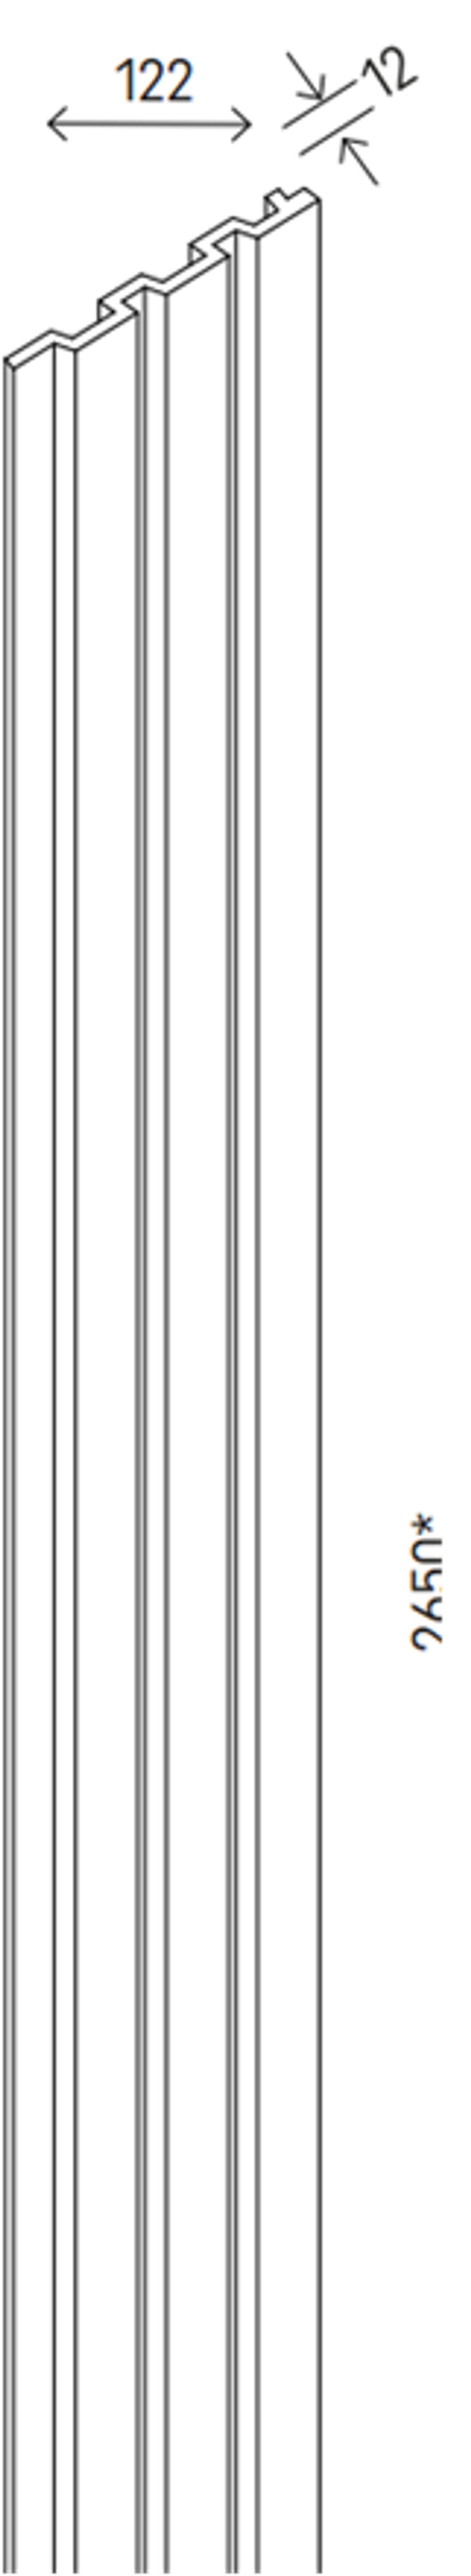 Декоративная панель LINERIO M-LINE BLACK